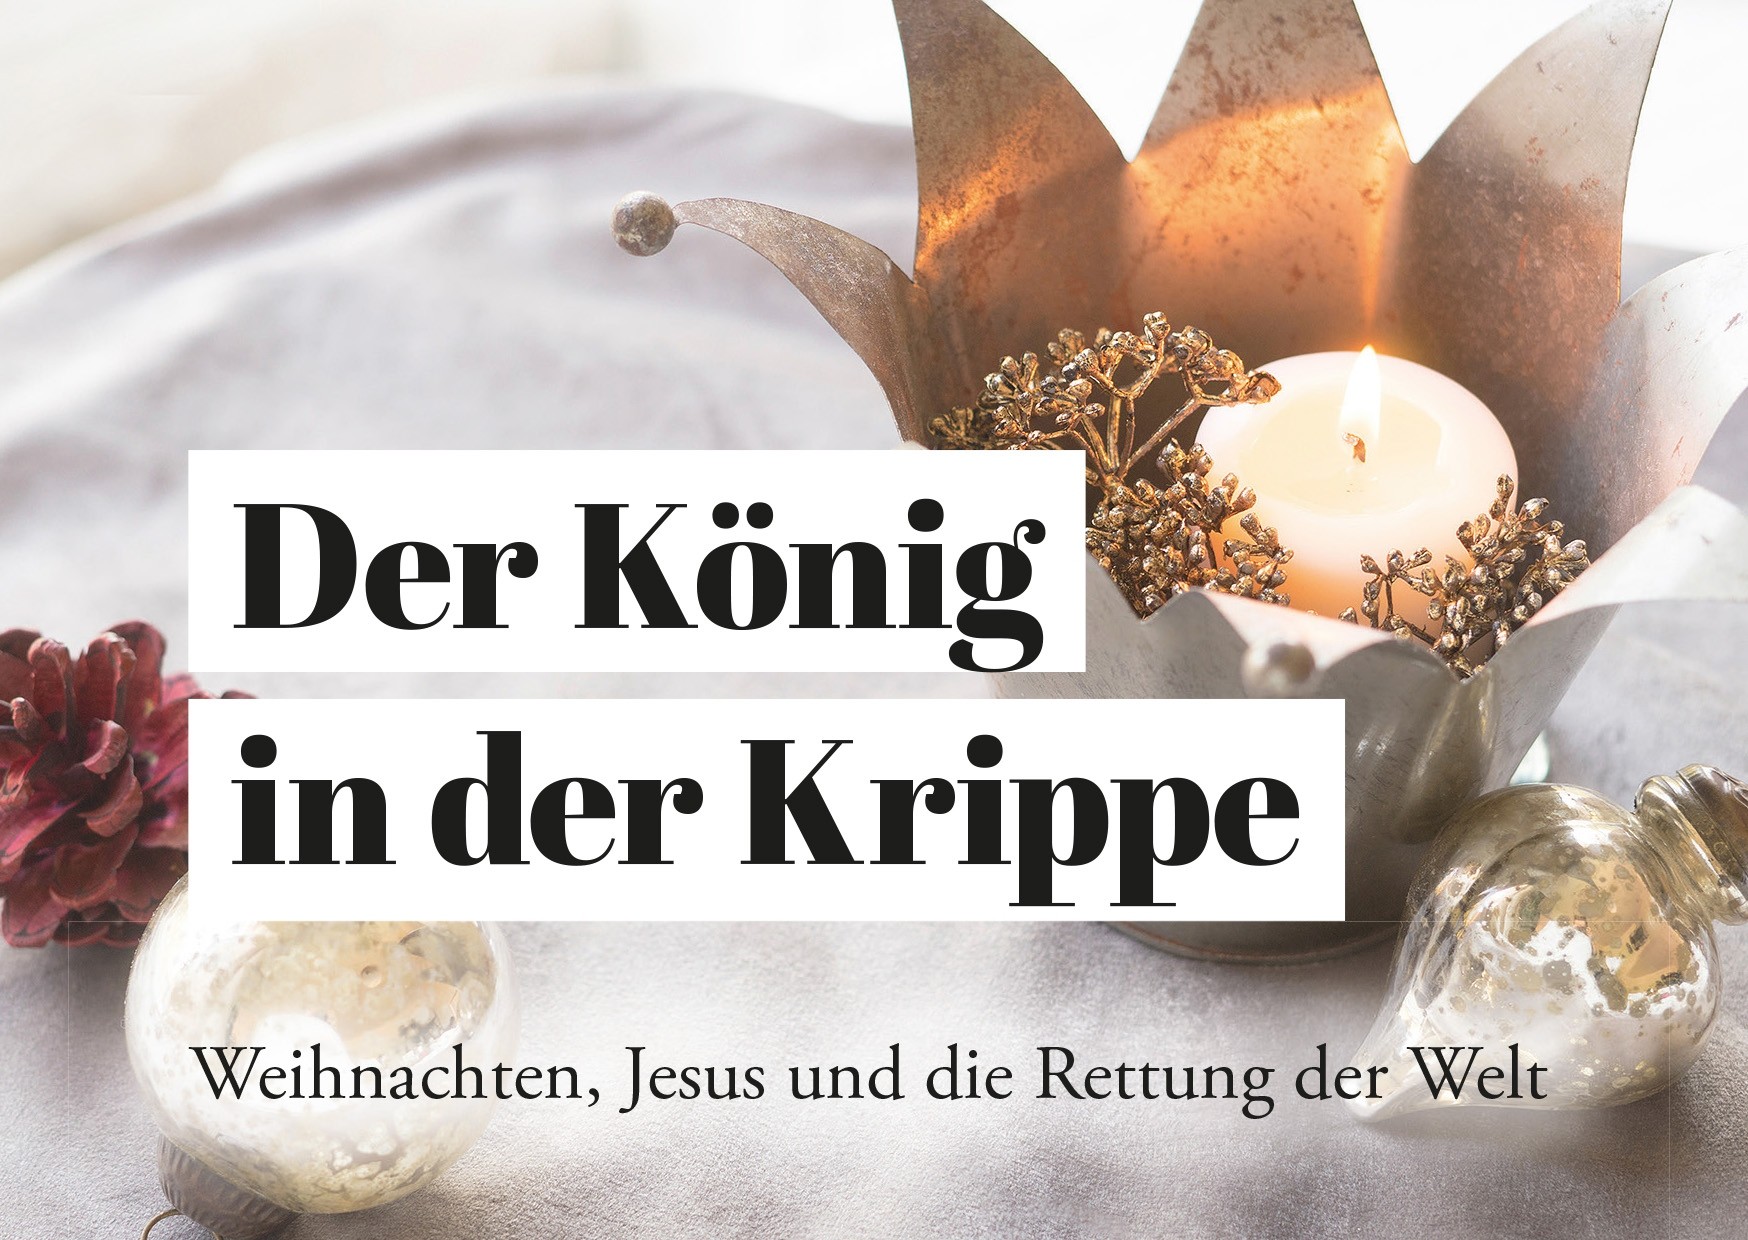 Der König in der Krippe - Weihnachten, Jesus und die Rettung der Welt, Evangelistisches Grußheft zu Weihnachten